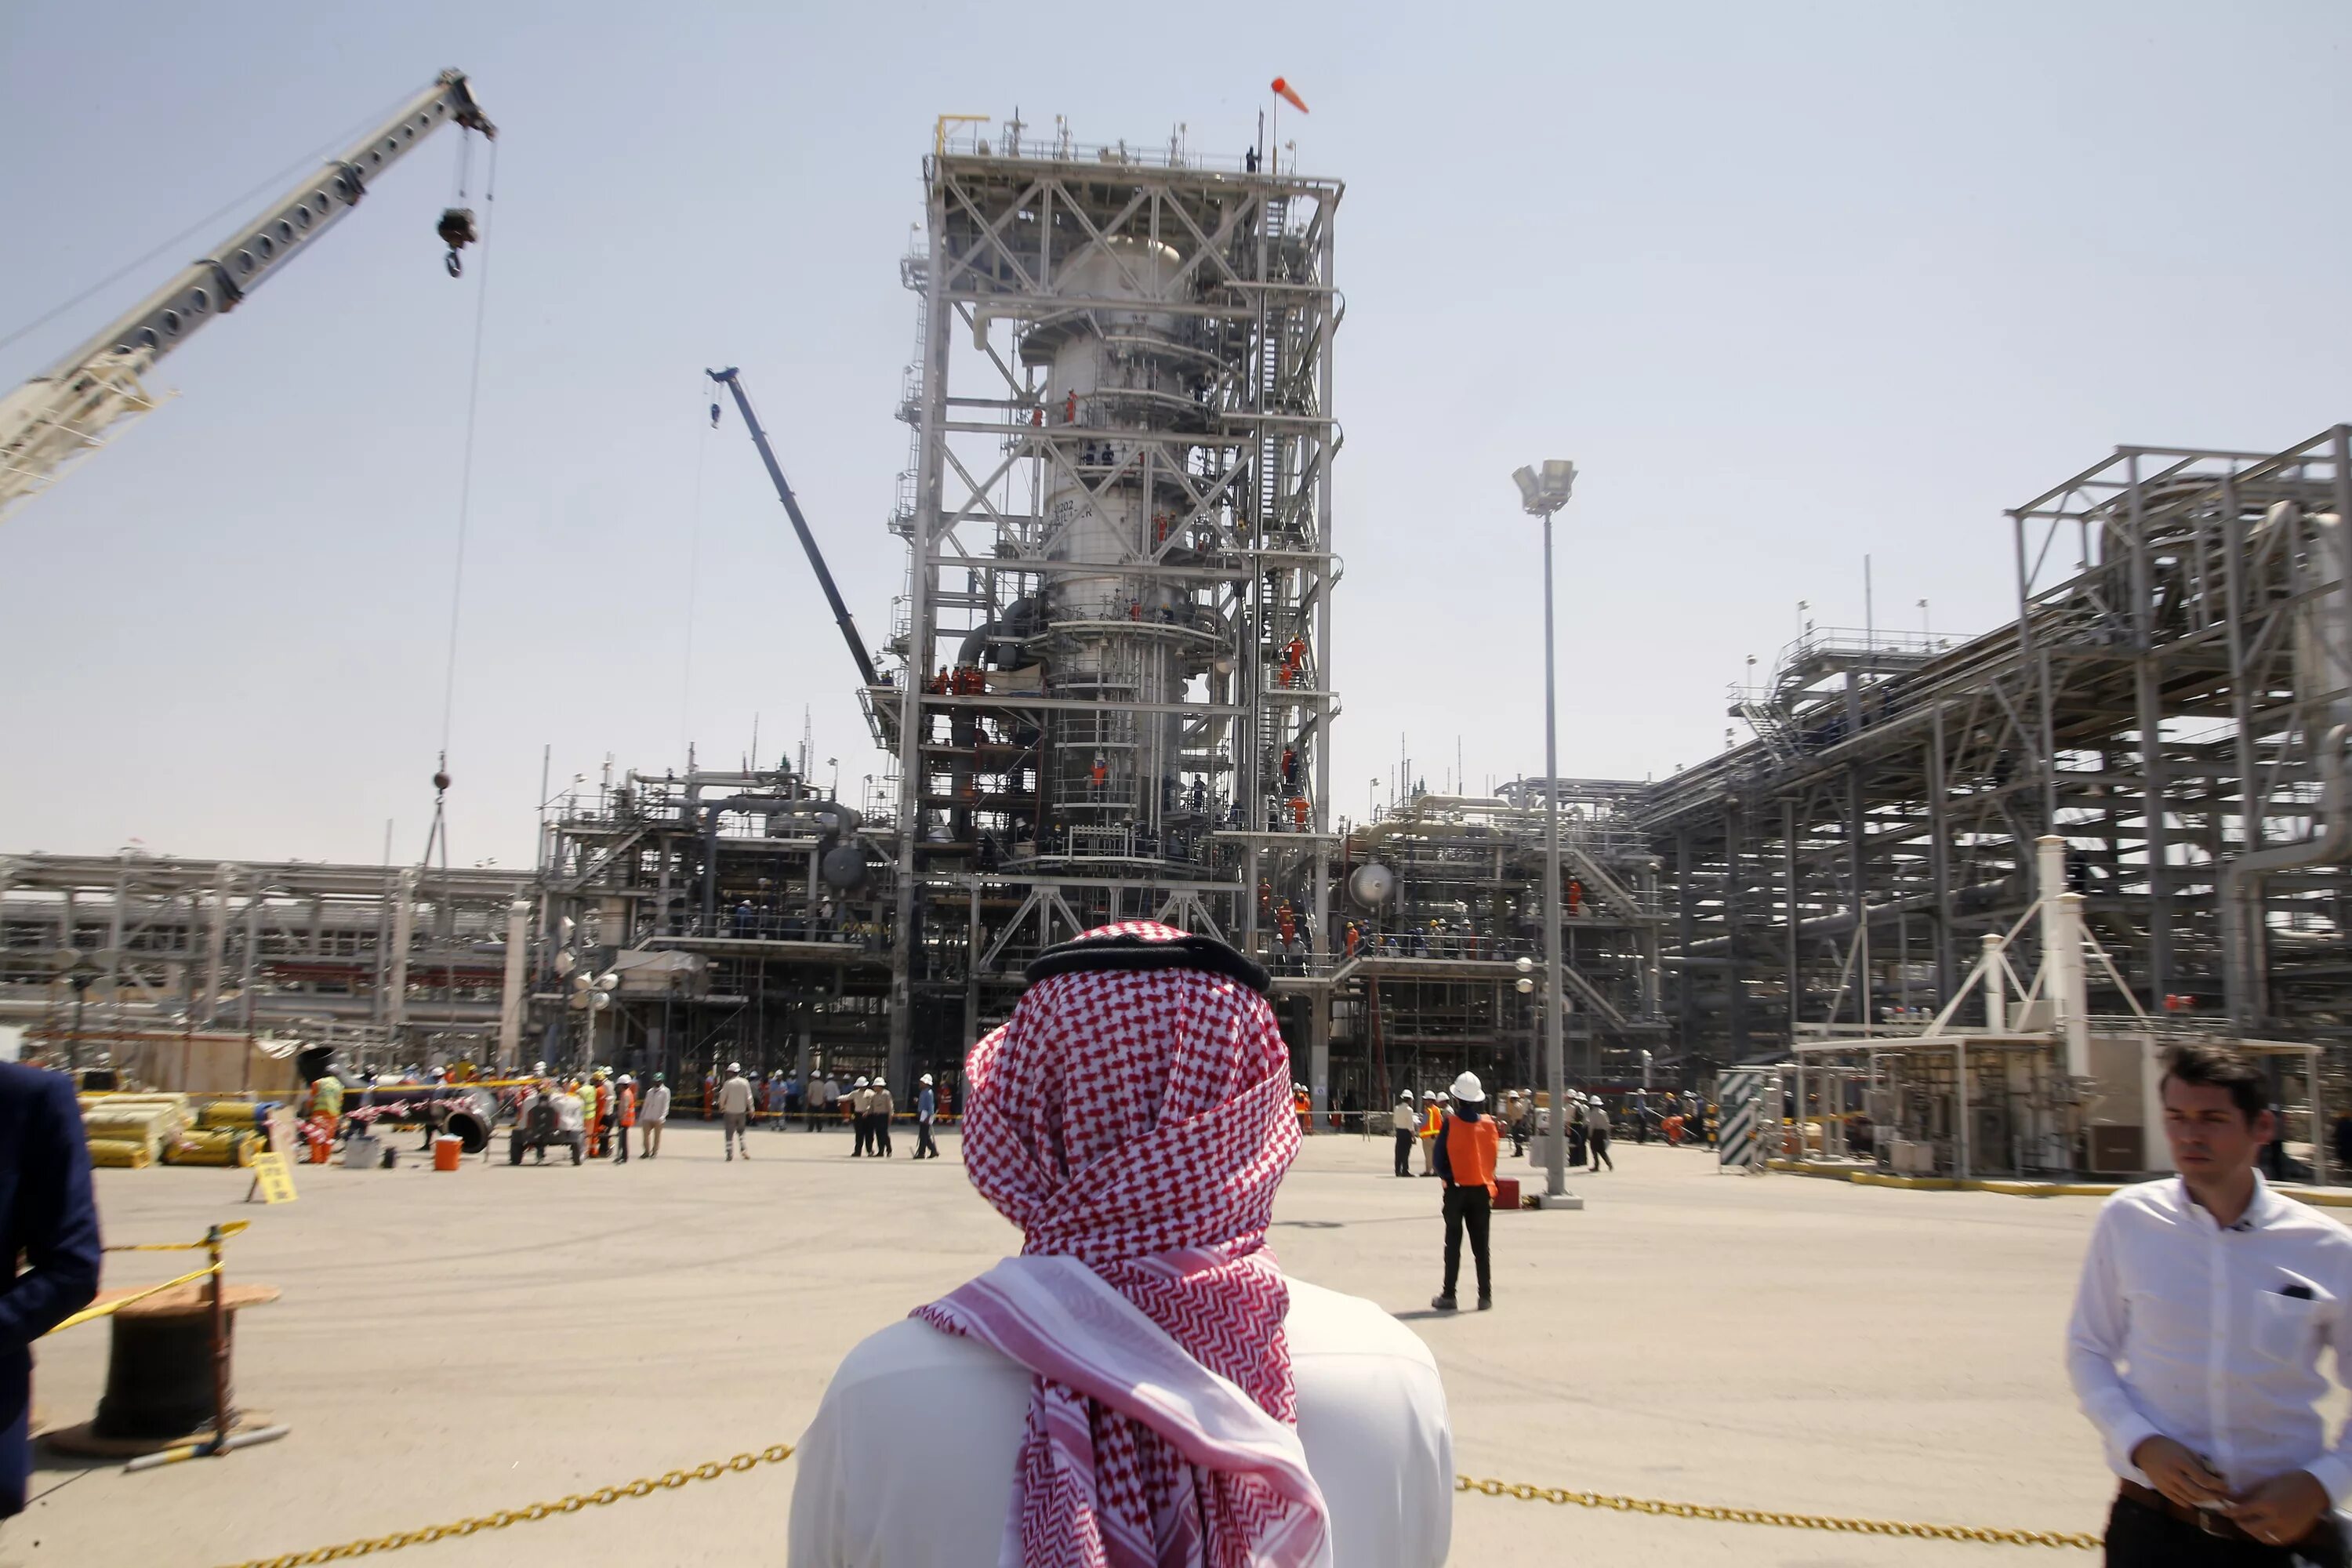 Нефть арабов. Нефтеперерабатывающий завод в Саудовской Аравии. Объединённые арабские эмираты добыча нефти. Саудовская Аравия нефтедобыча. Нефтедобыча в ОАЭ.